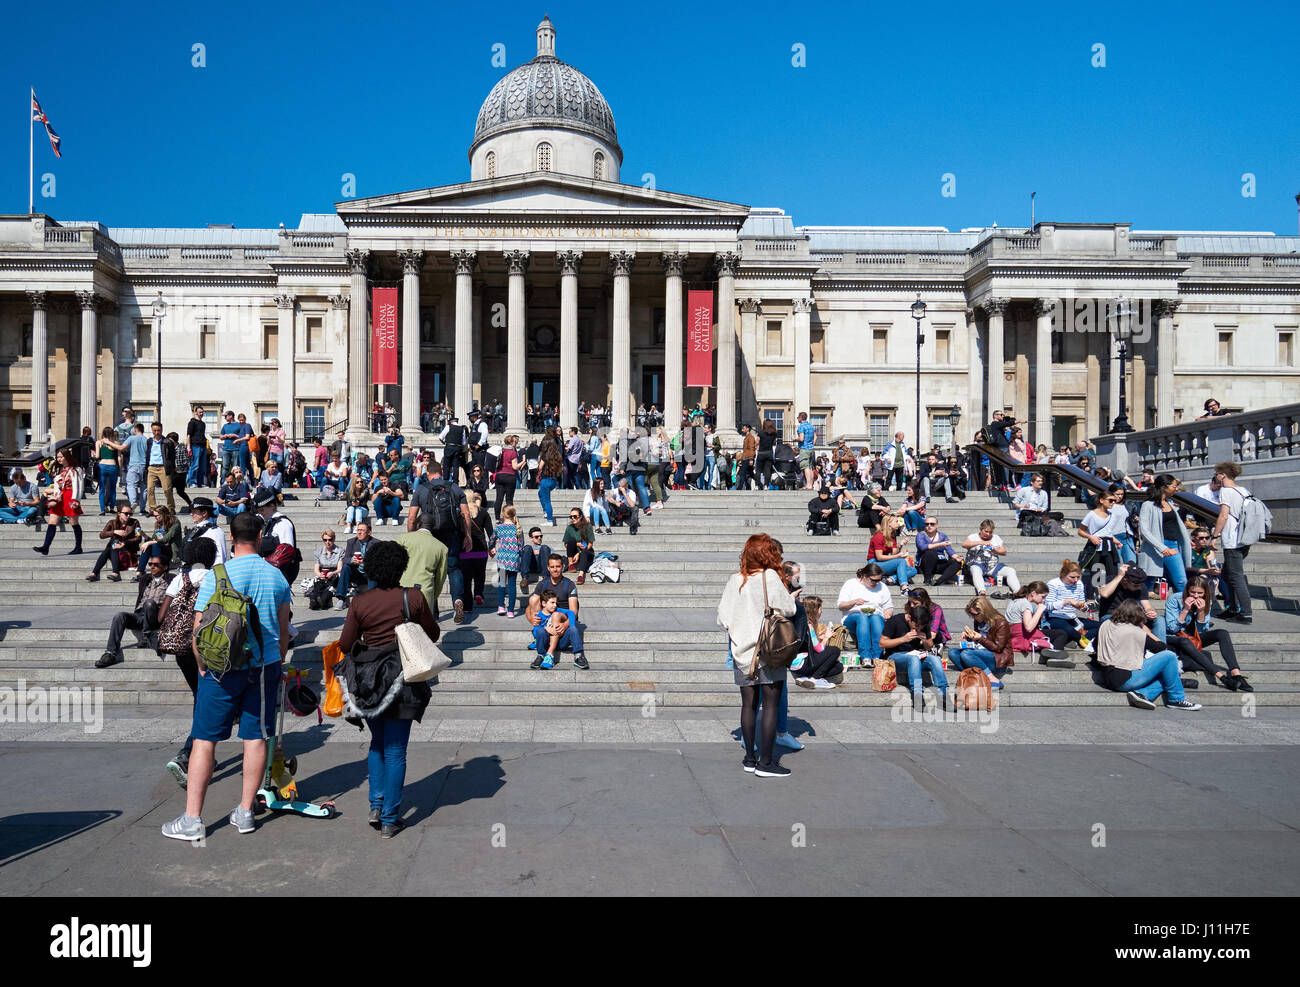 Tourists outside the National Gallery on Trafalgar Square, London England United Kingdom UK Stock Photo